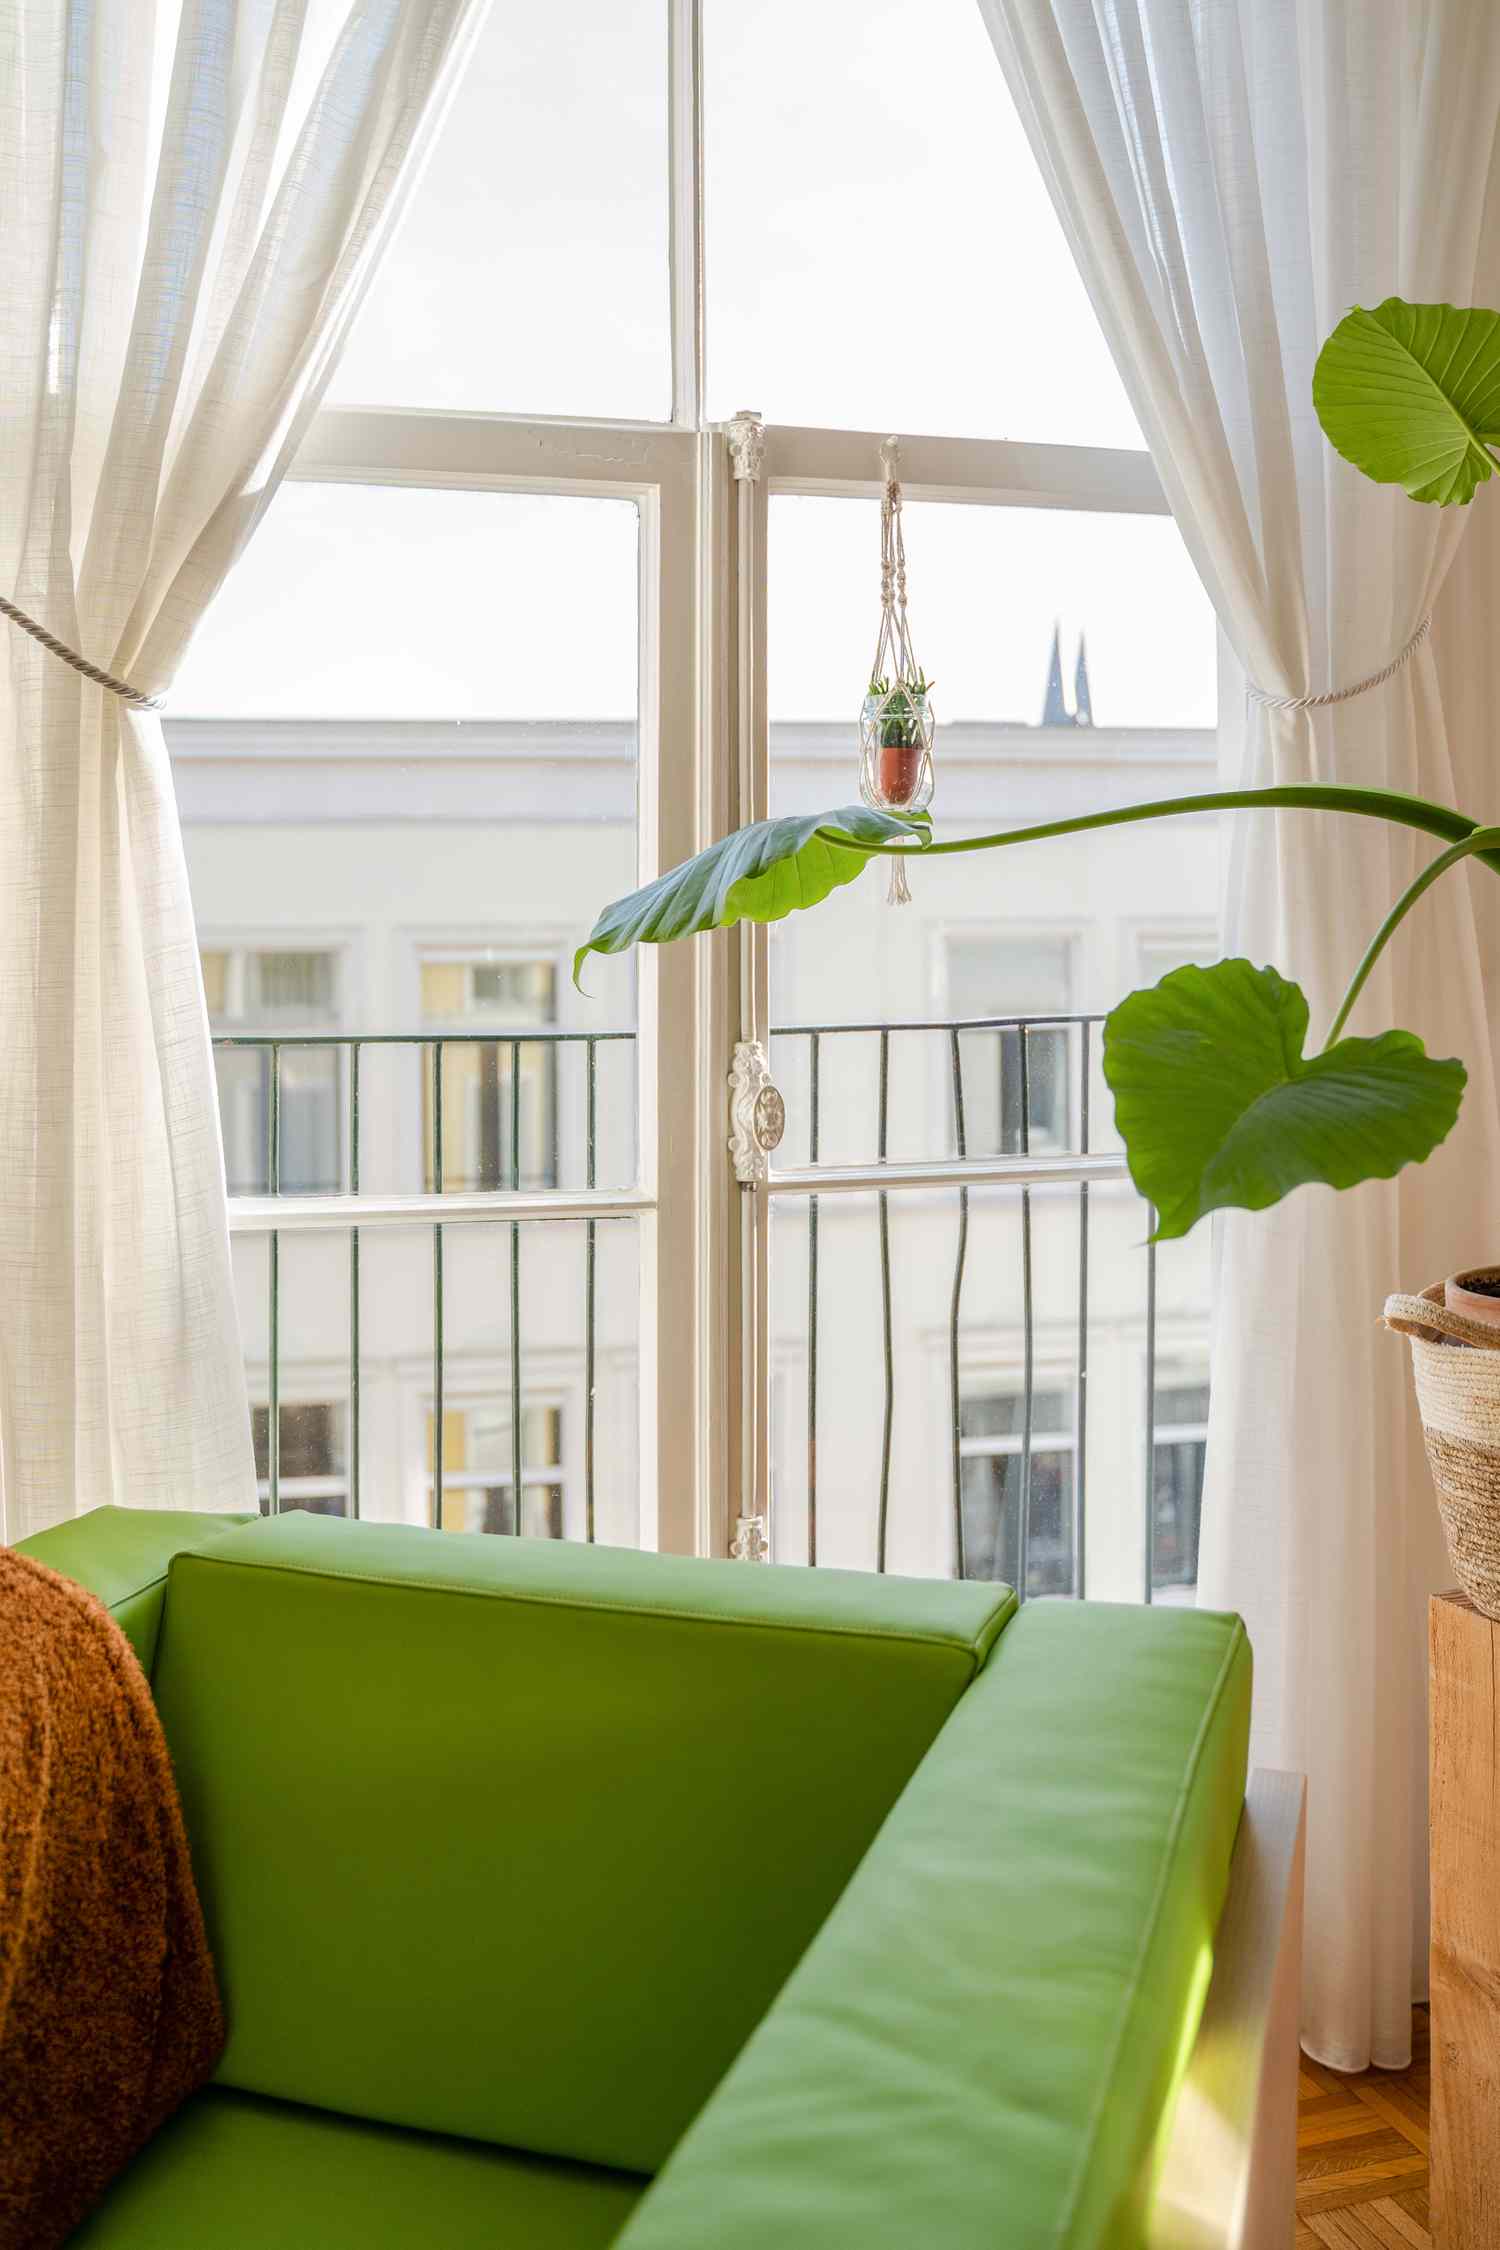 fauteuil vert et plante verte près d'une fenêtre avec rideaux blancs